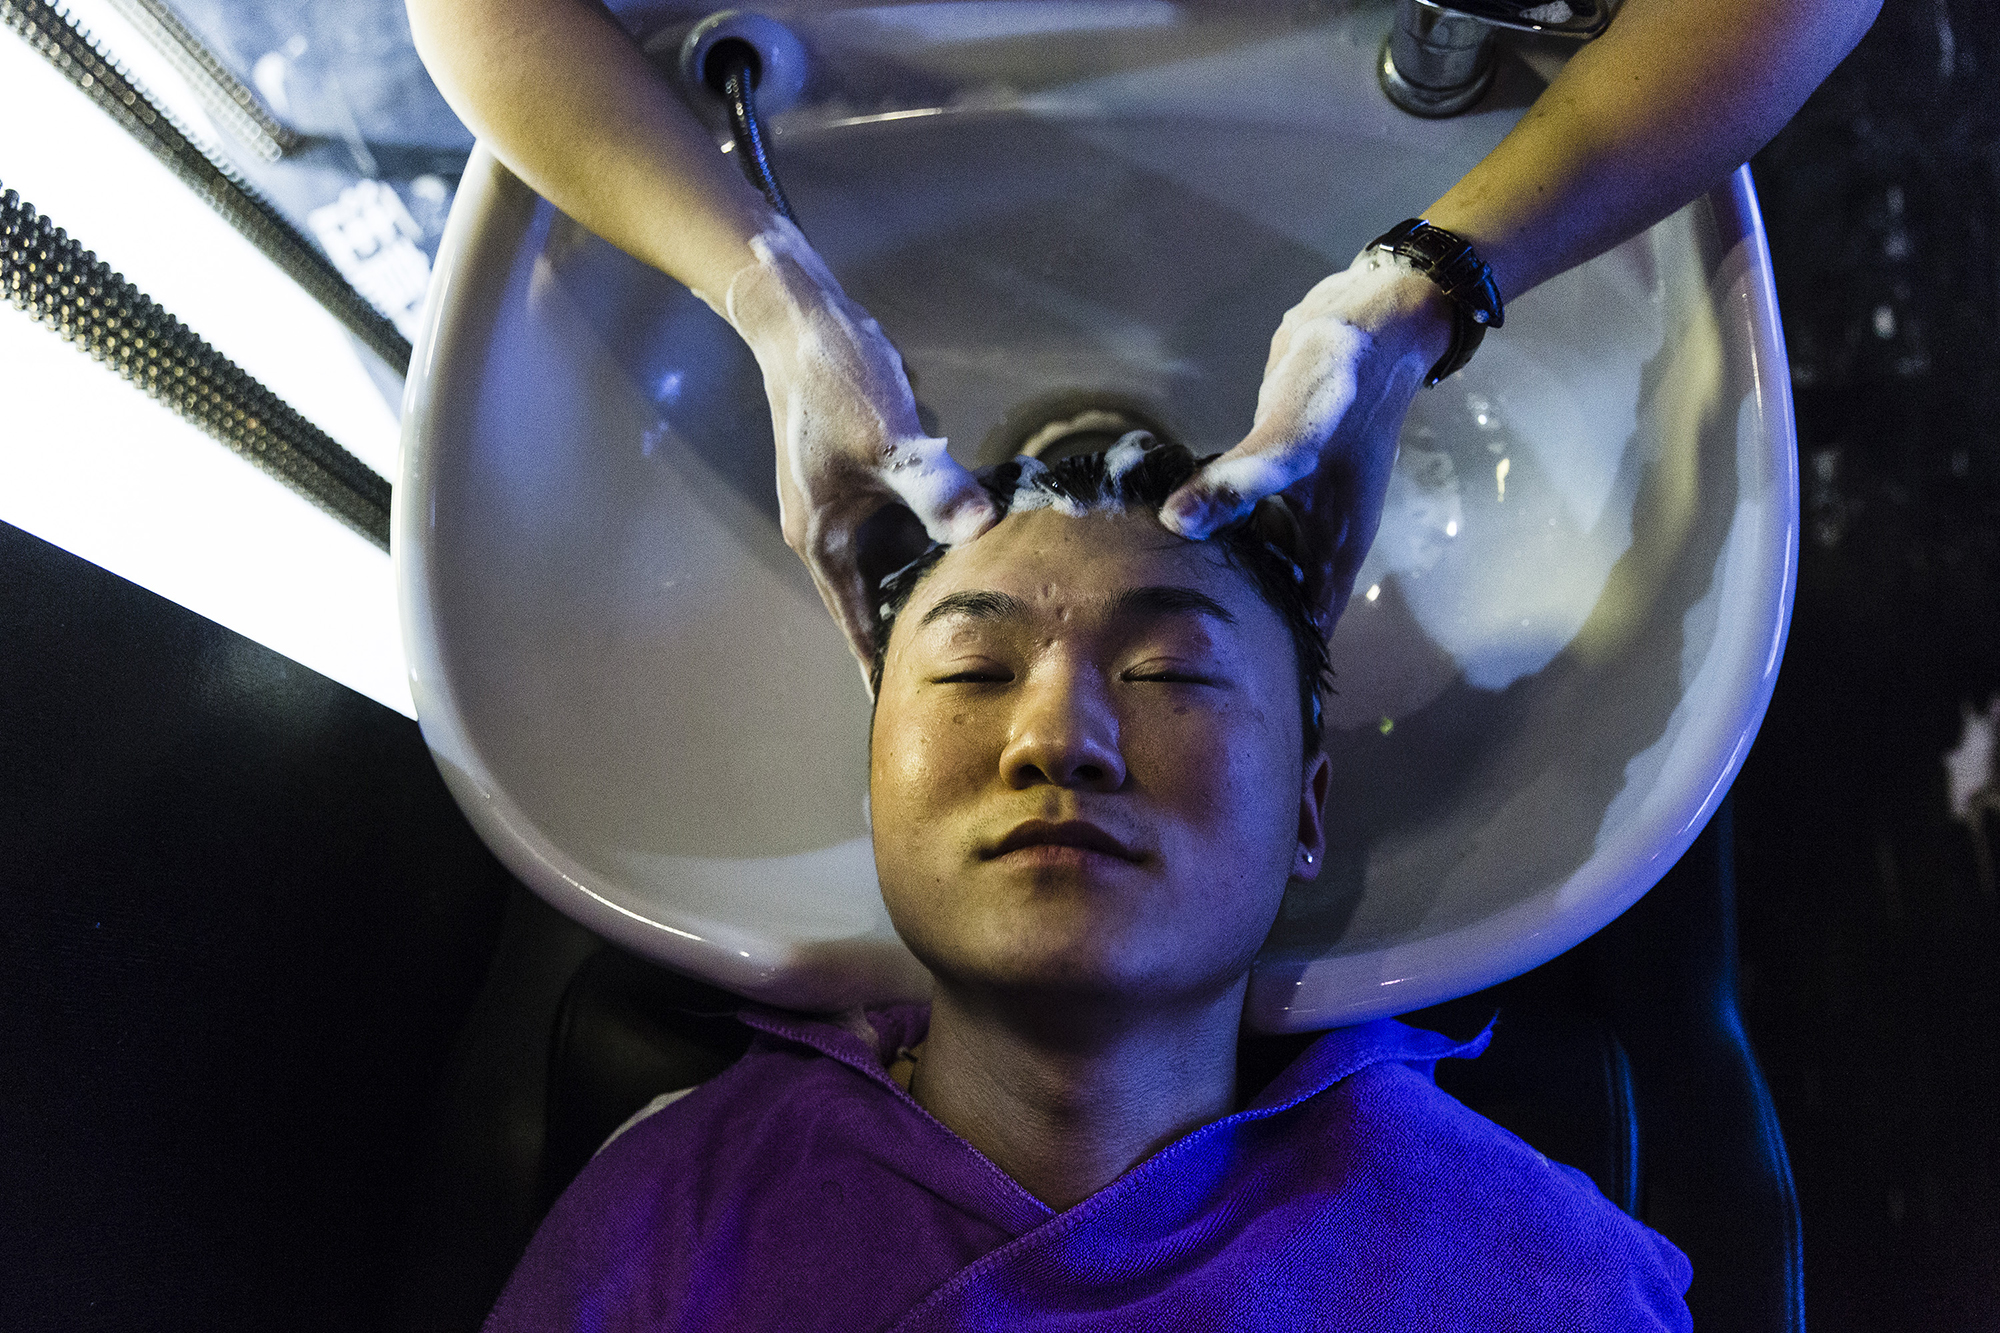 Software engineer and Puamap student Jiang Shuai gets his hair styled at a salon, May 15, 2015. 